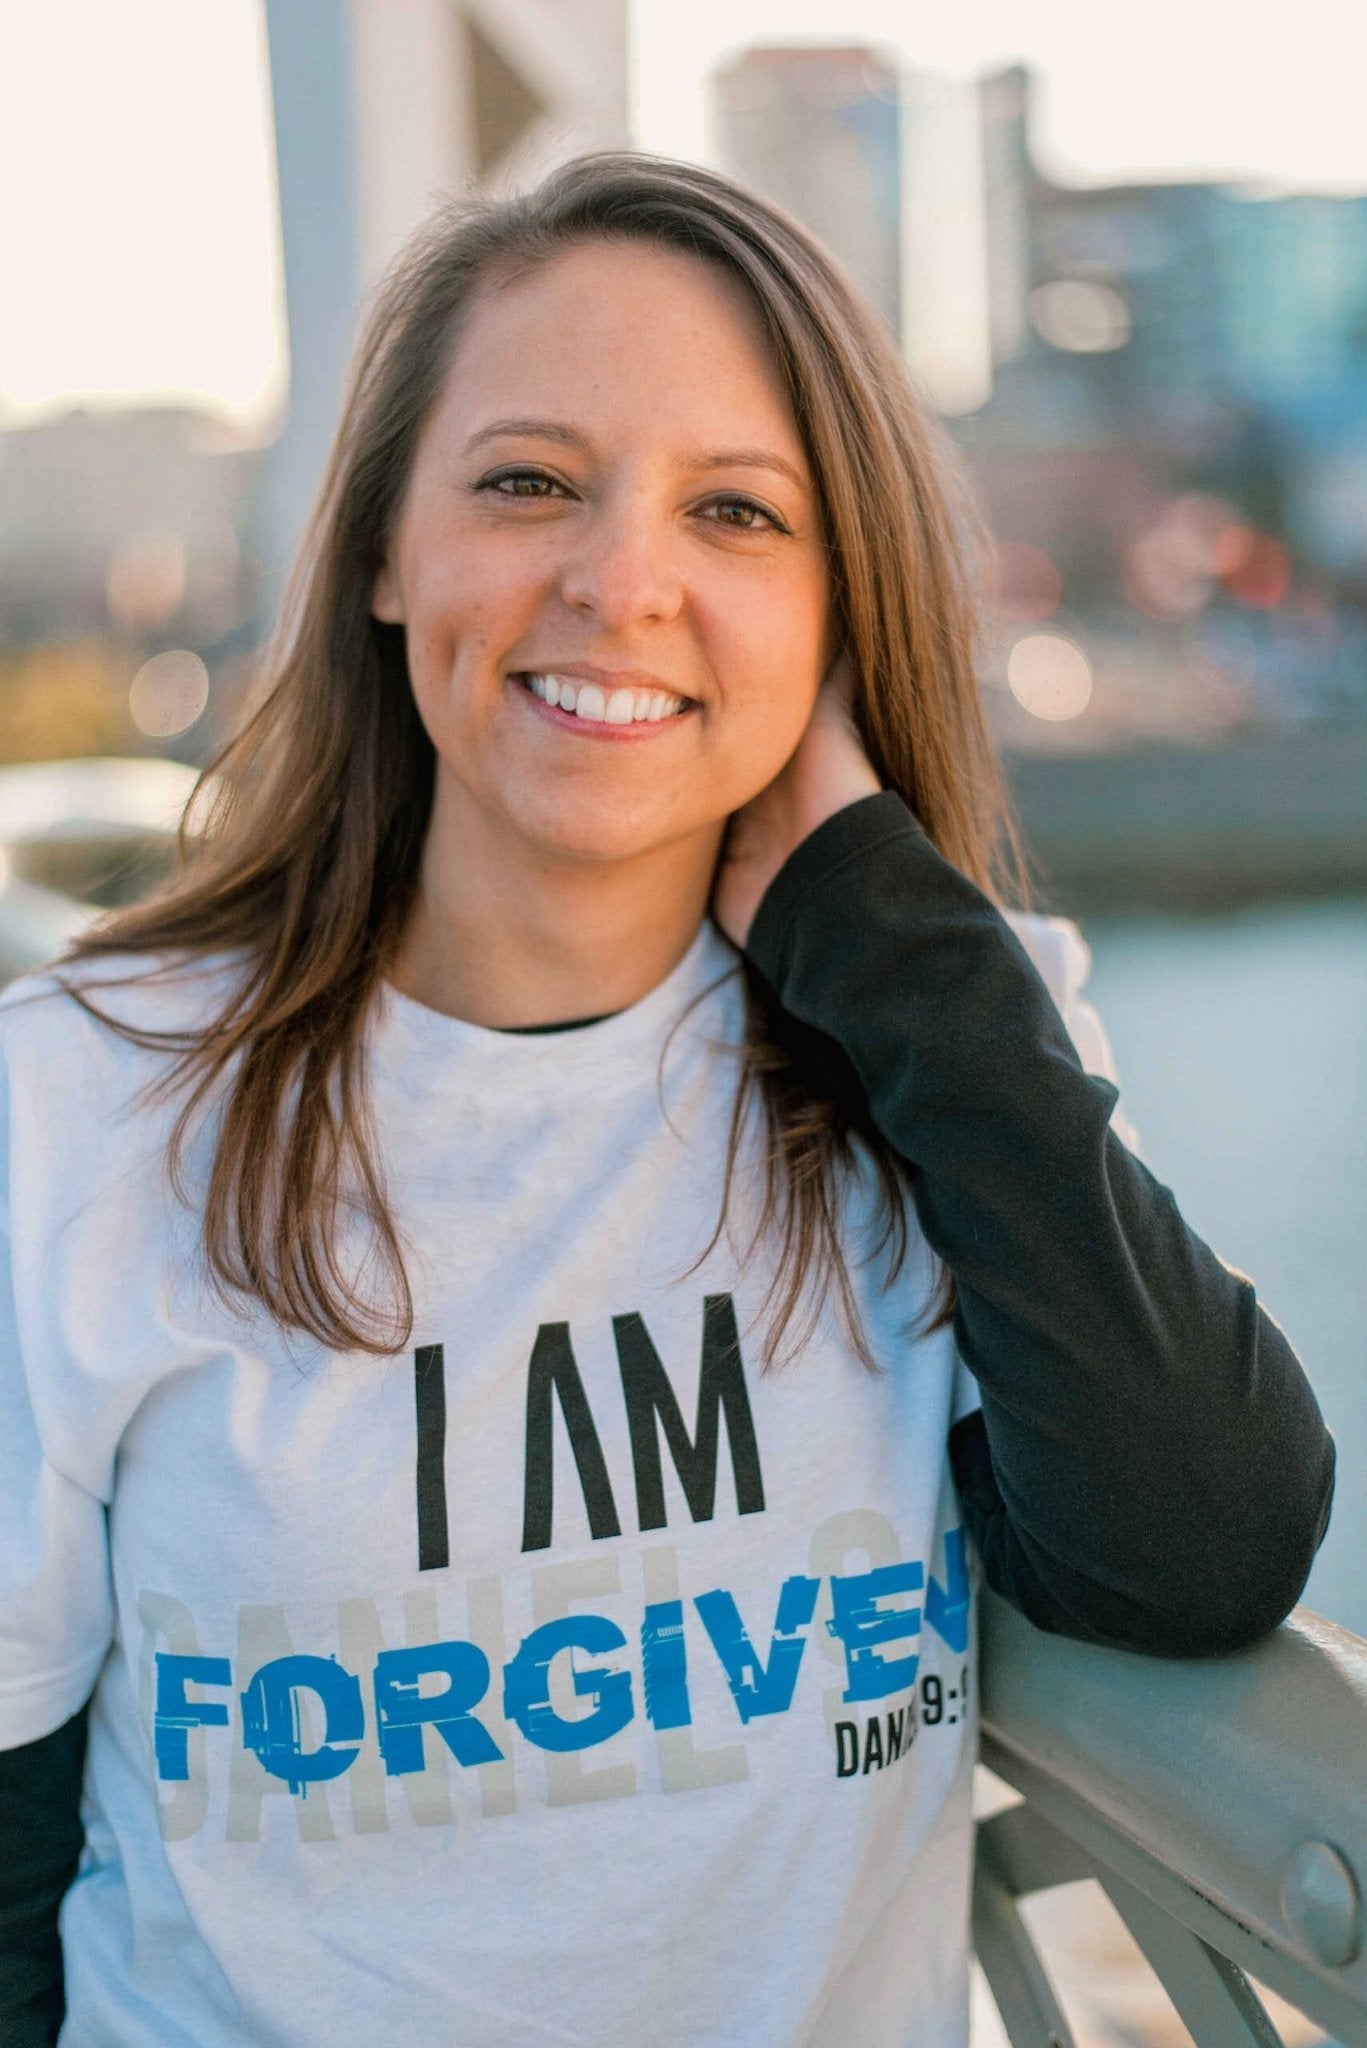 I AM Forgiven Shirt (White) - Vision Apparel Inc.